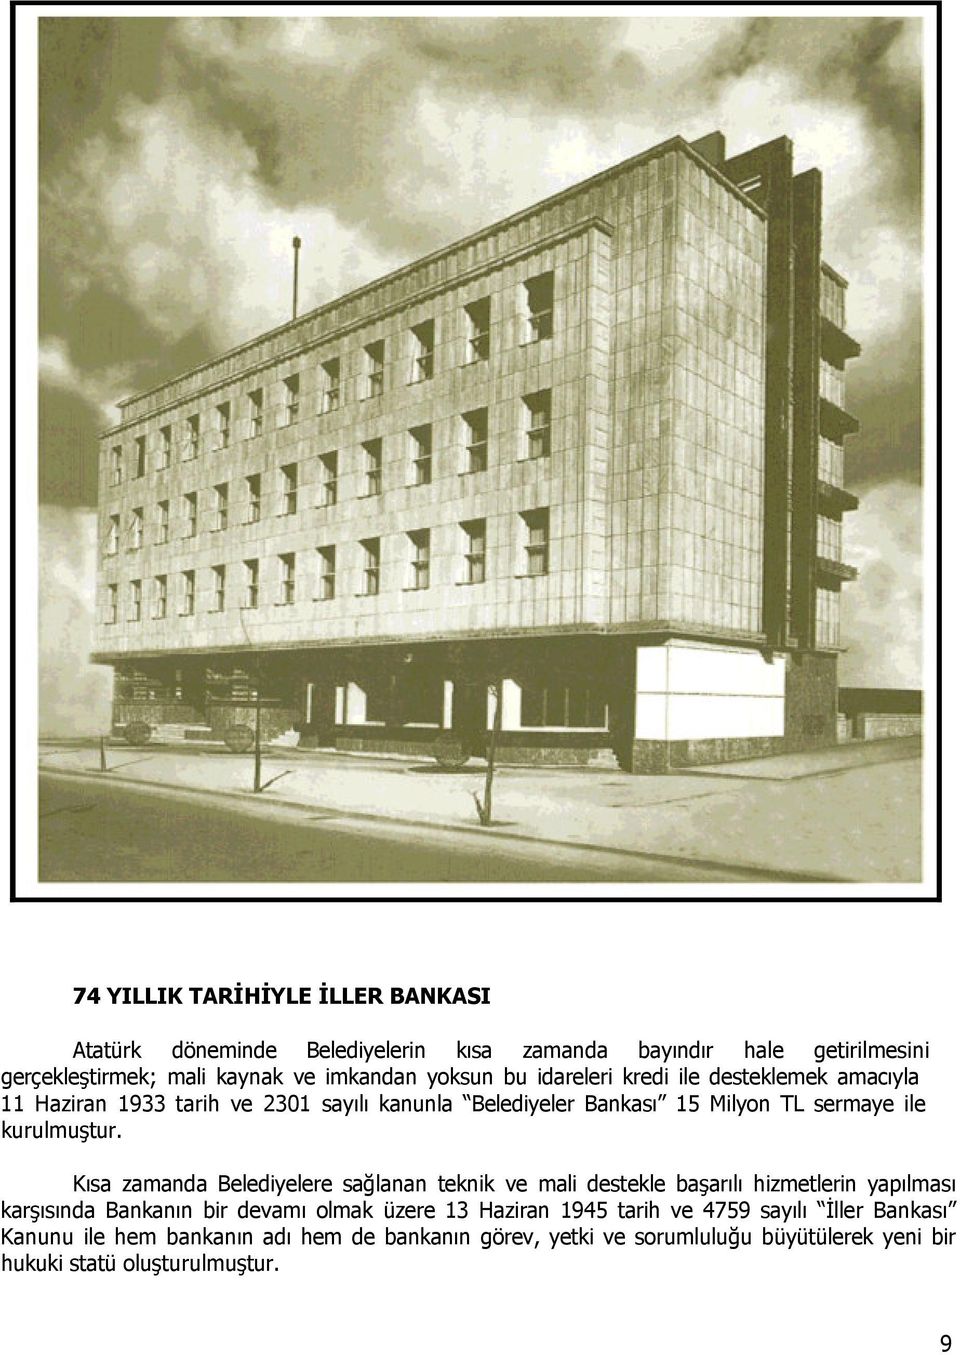 Kısa zamanda Belediyelere sağlanan teknik ve mali destekle başarılı hizmetlerin yapılması karşısında Bankanın bir devamı olmak üzere 13 Haziran 1945